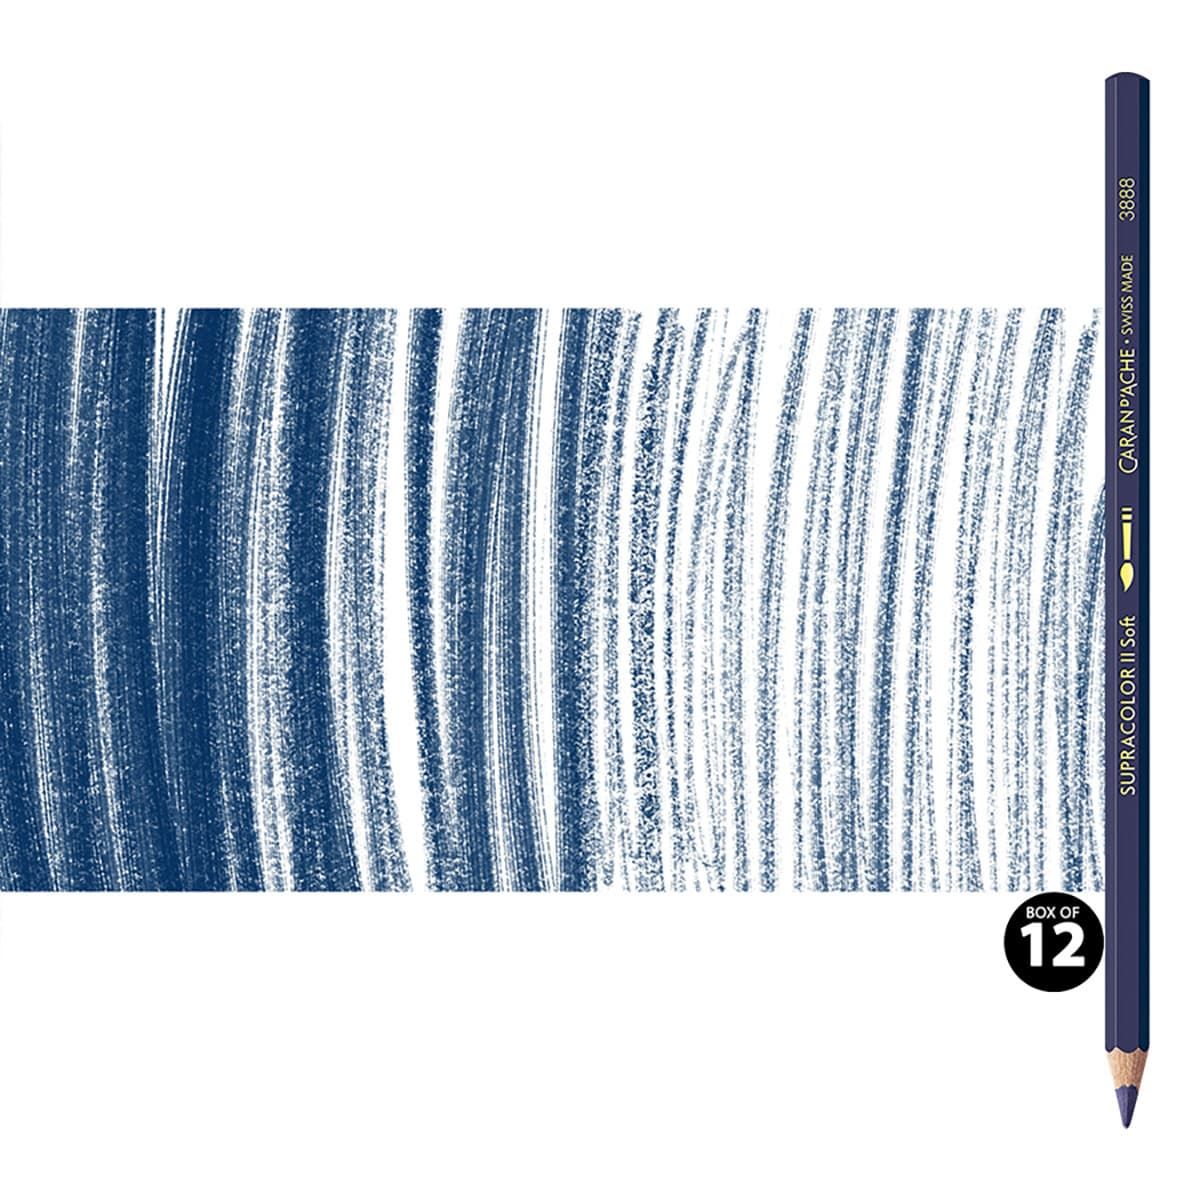 Supracolor II Watercolor Pencils Box of 12 No. 139 - Indigo Blue